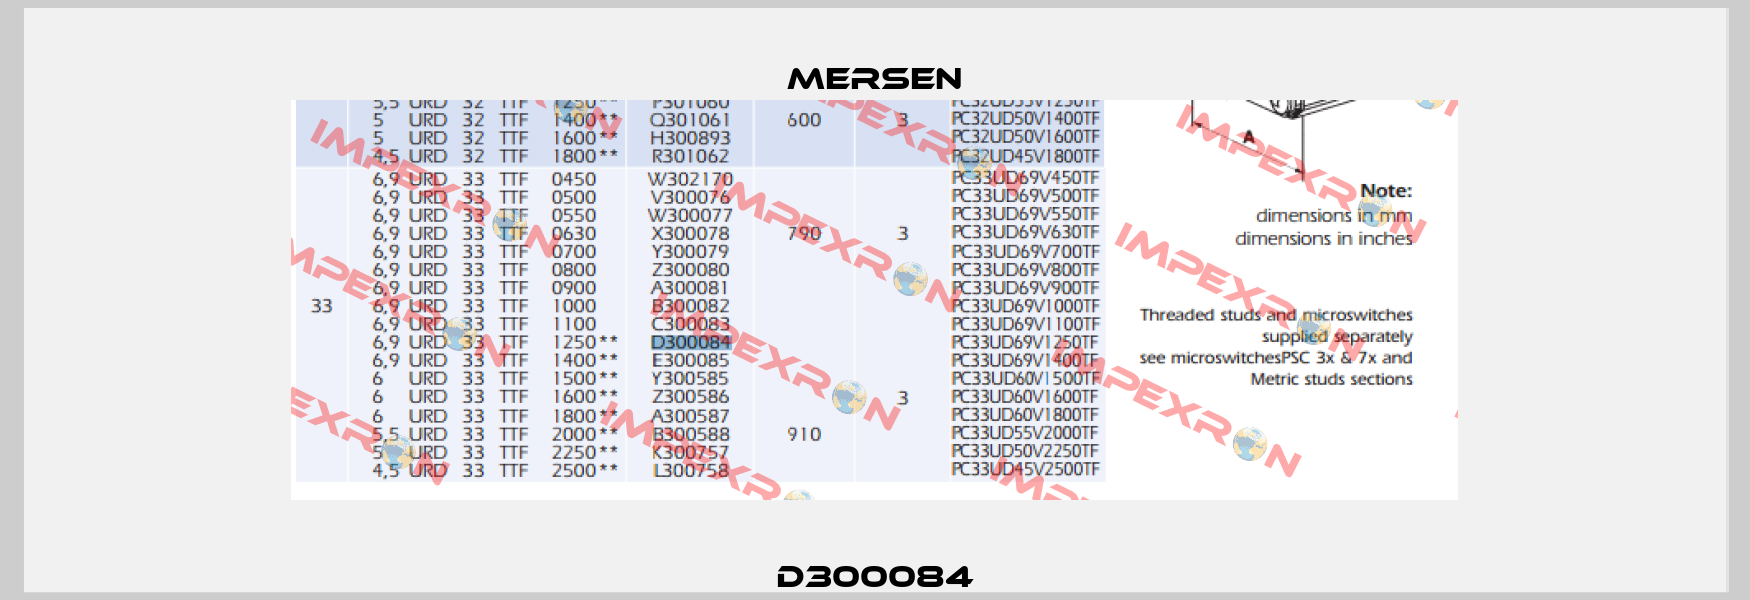 D300084 Mersen